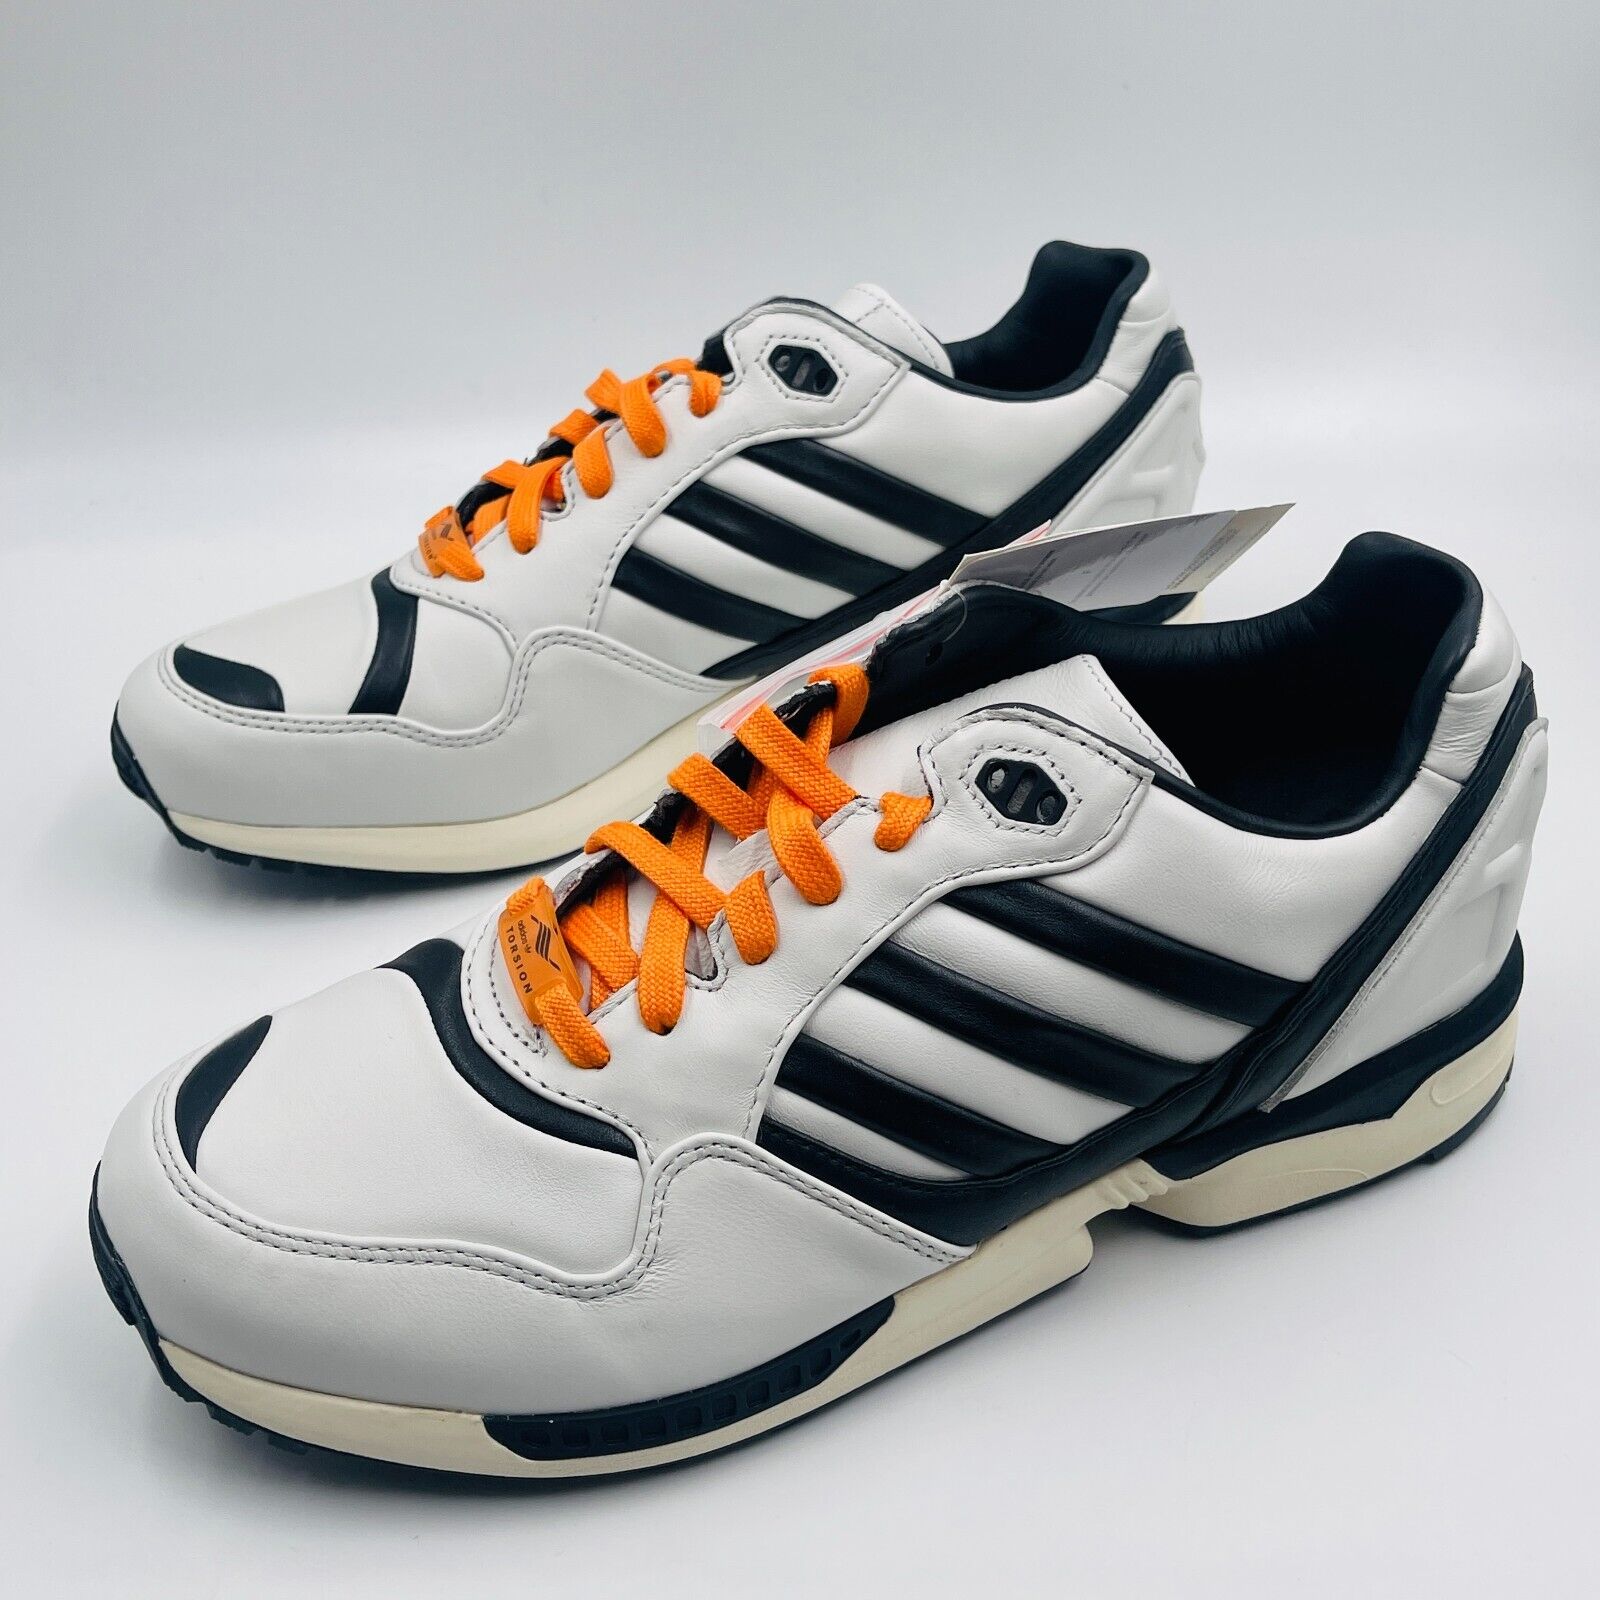 Adidas ZX 6000 Juventus White Black Orange Sneakers FZ0345, Men's Size 11